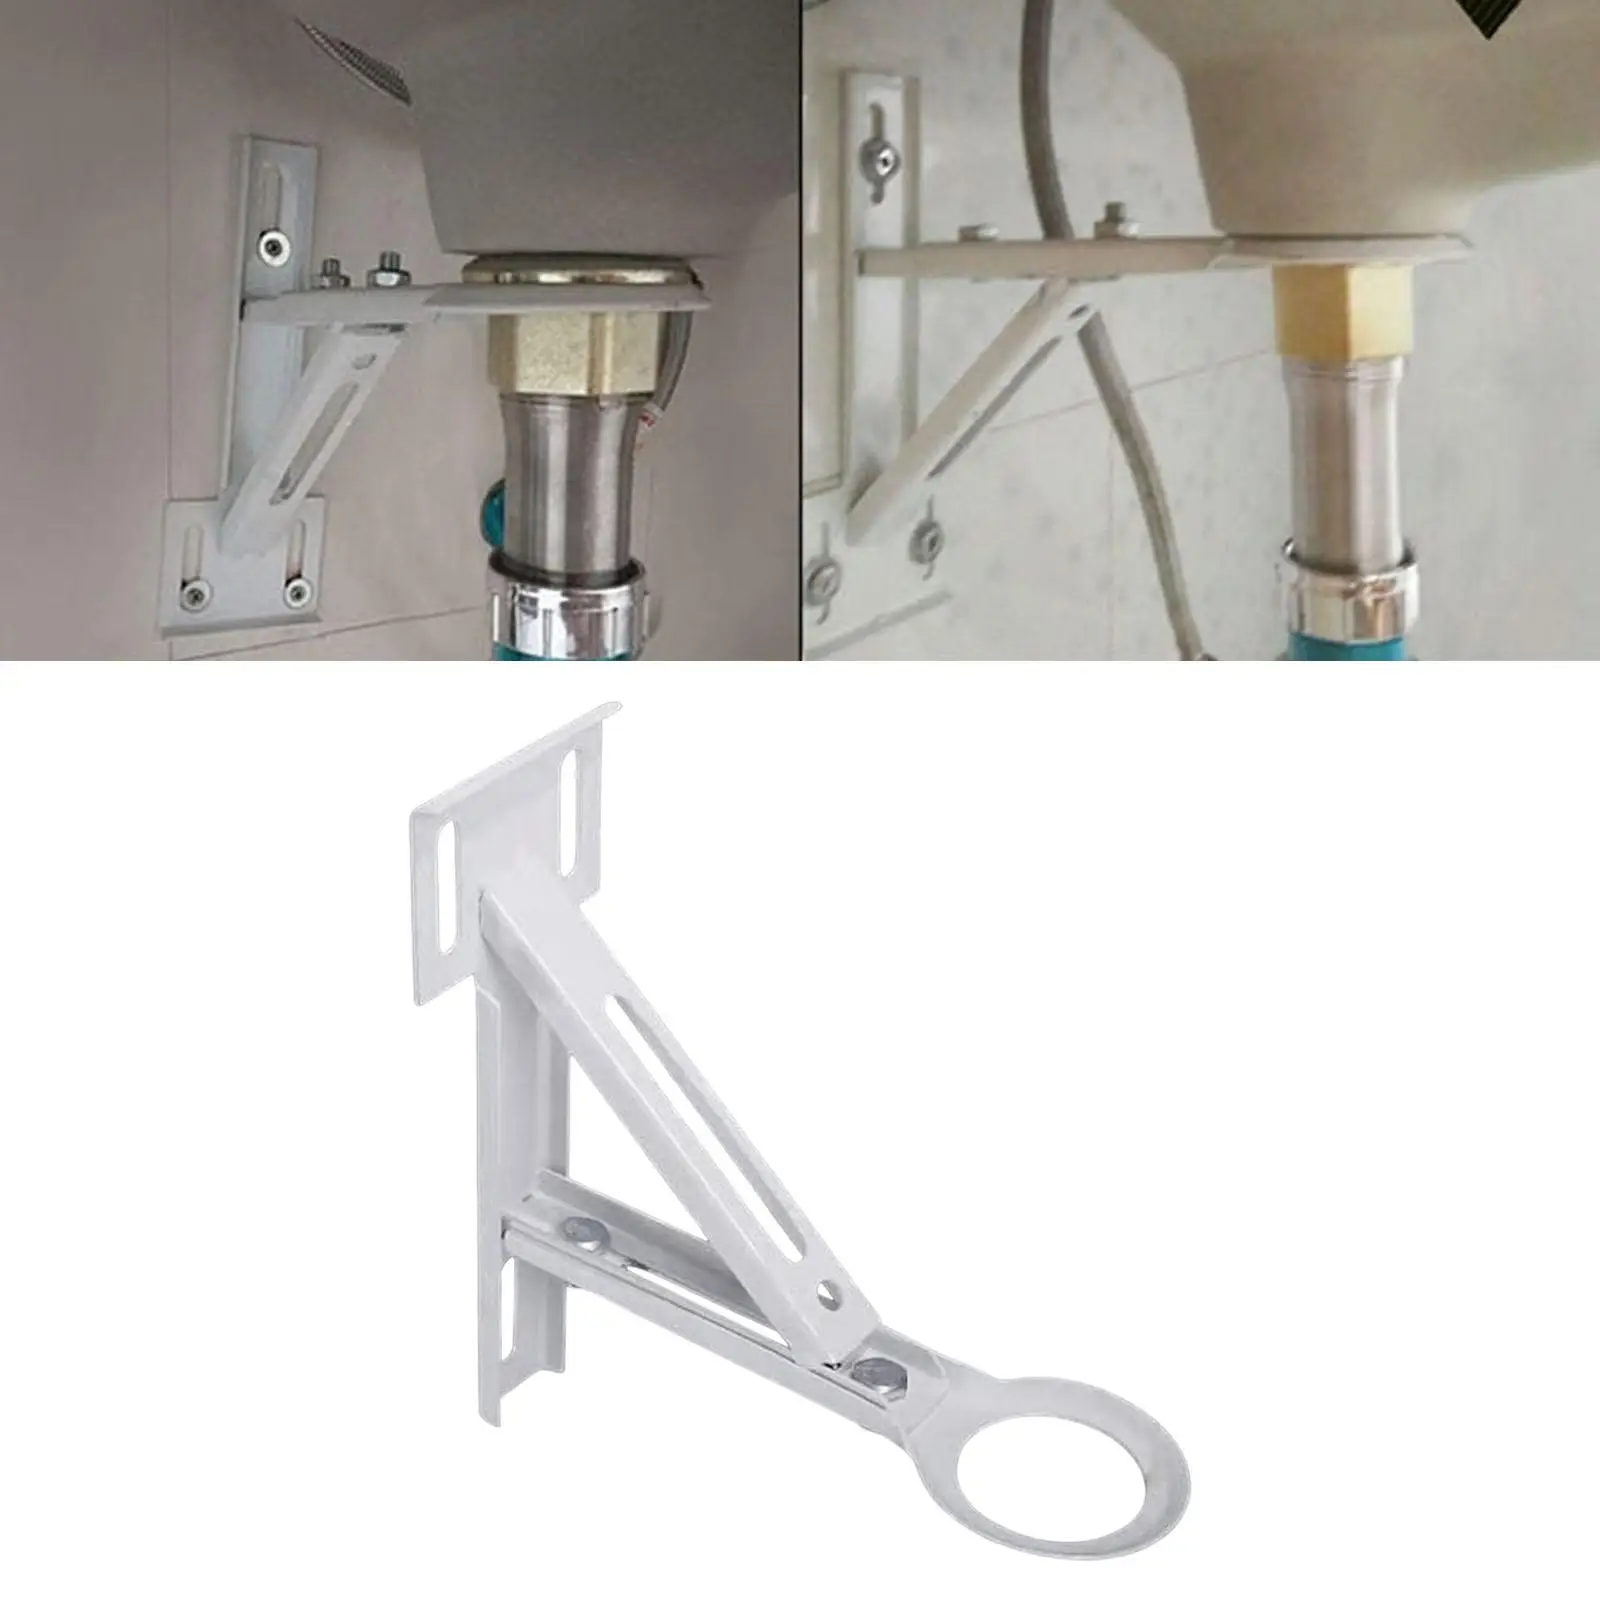 Undermount Sink Bracket Undermount Sink Installation Heavy Duty Tripod Adjustable Triangle Bracket Support for Kitchen Bathroom